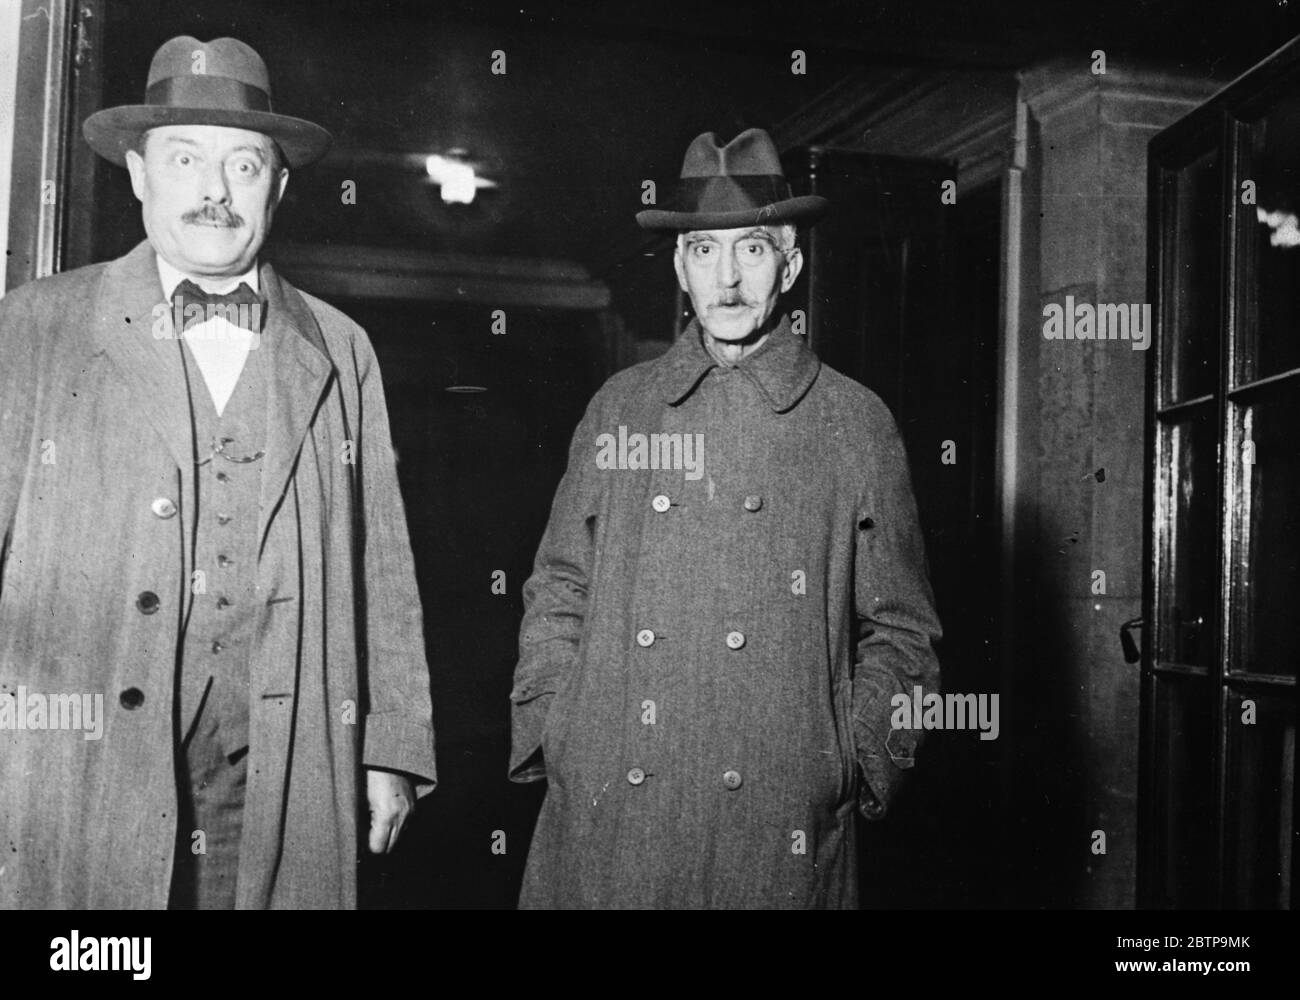 Complotto monarchico spagnolo . Il colonnello Macia (a destra), organizzatore del complotto contro il Trono spagnolo, arrivò a Parigi dopo il suo arresto. 15 novembre 1926 Foto Stock